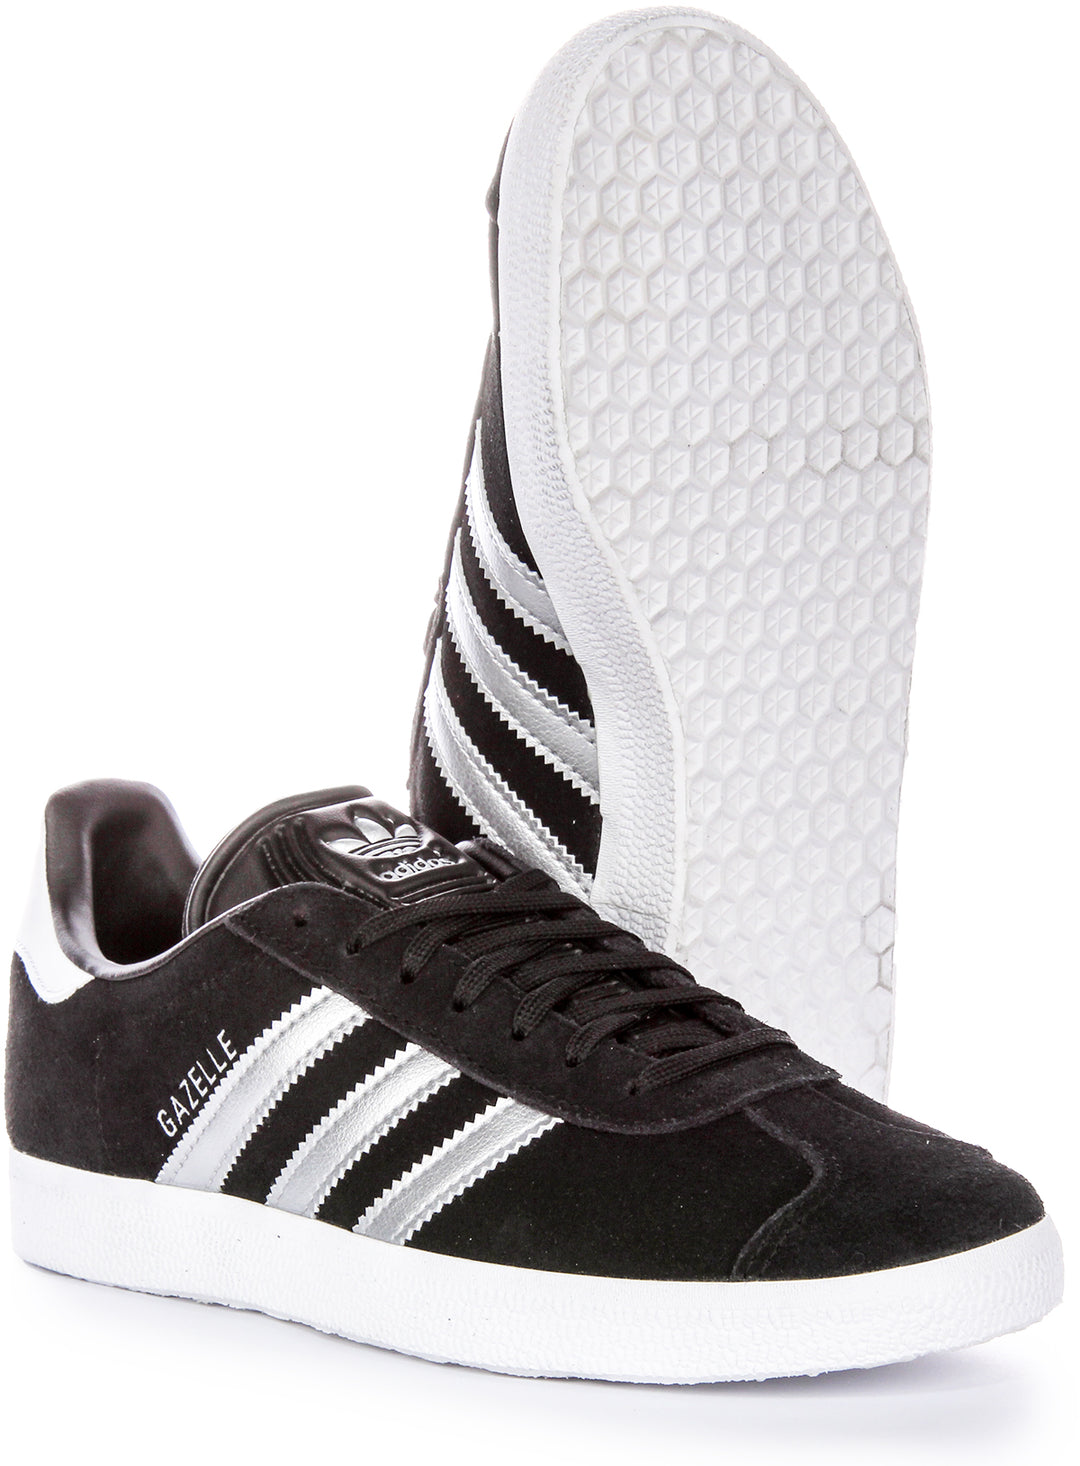 Adidas Gazelle W DamenSneaker mit VintageVibe und Silberdämmerung in Schwarz Silber